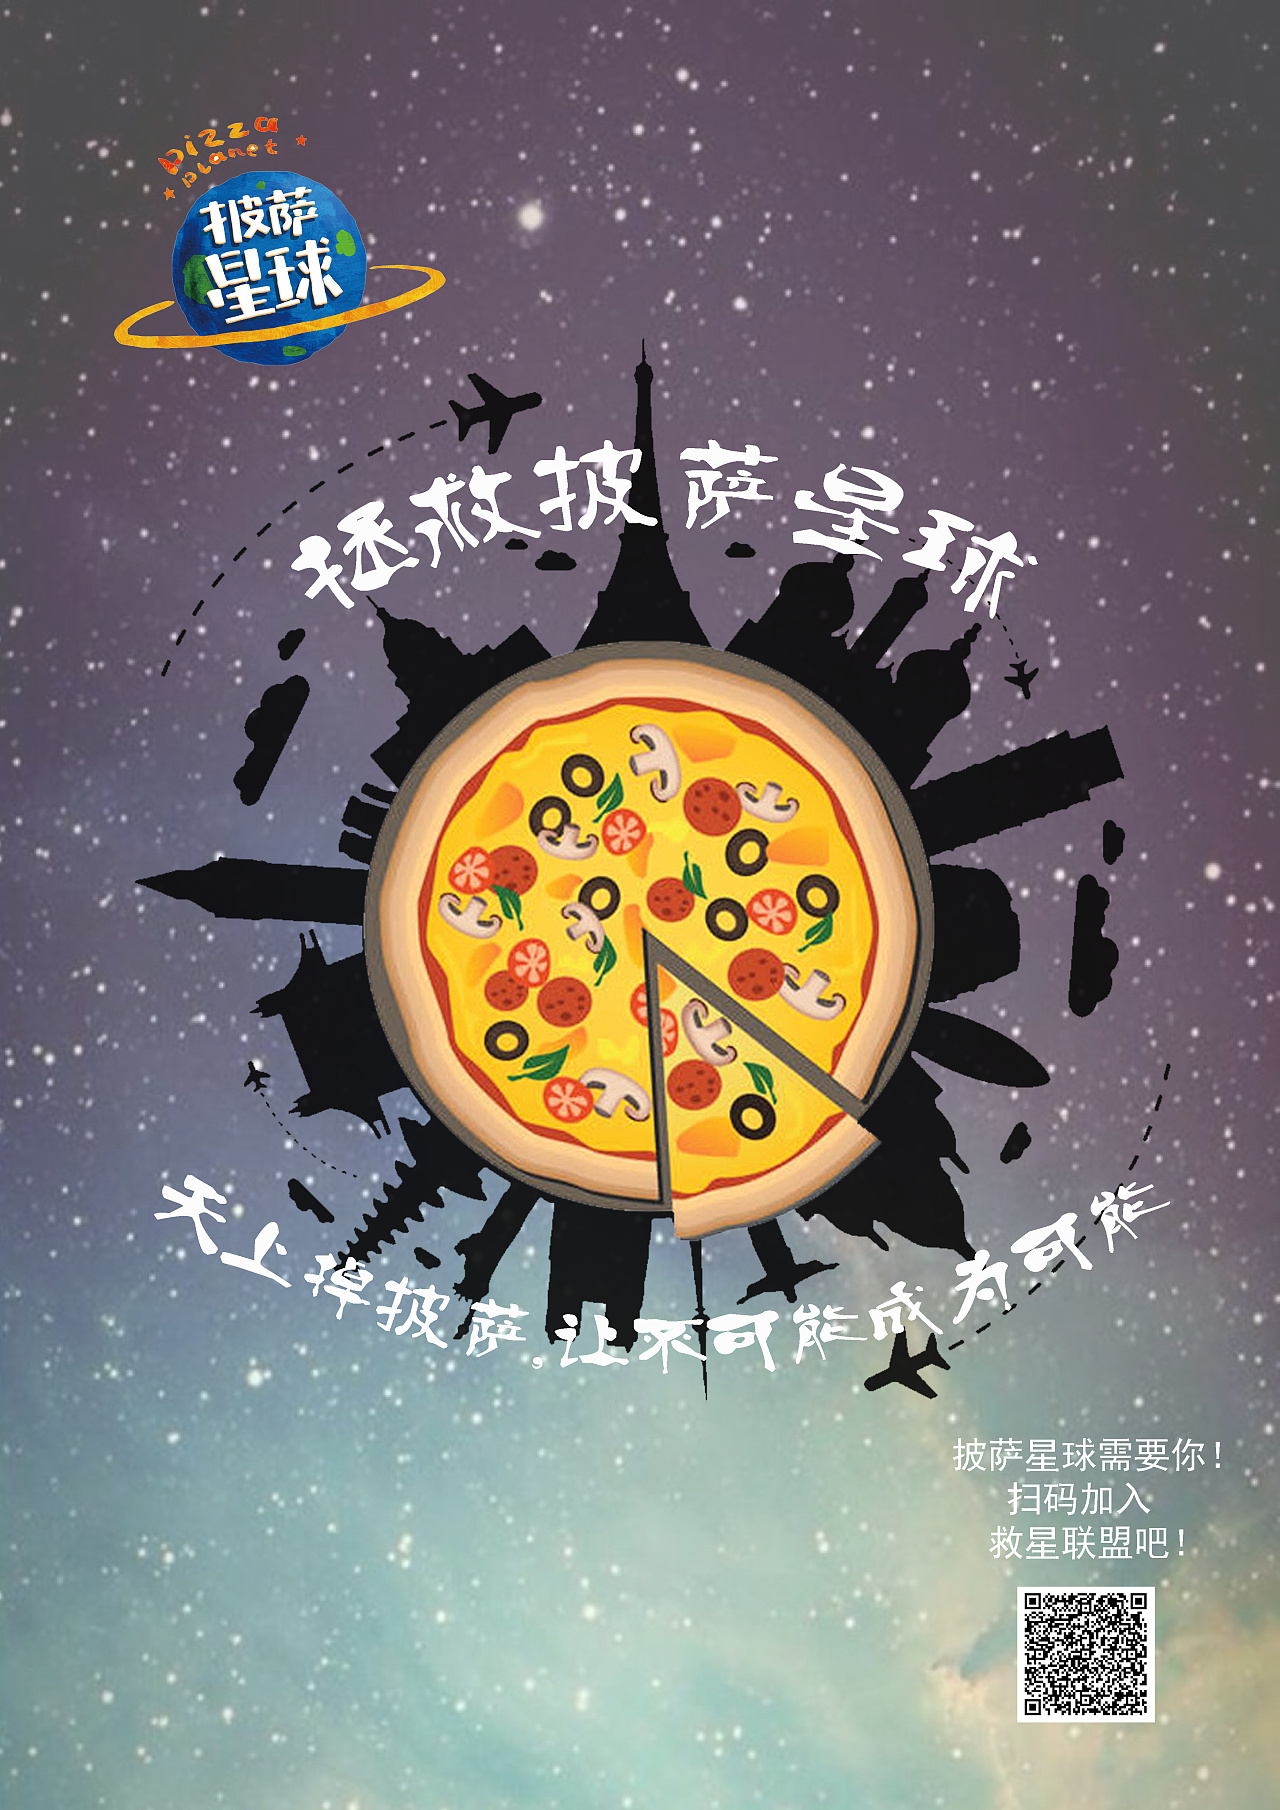 披萨星球海报图片